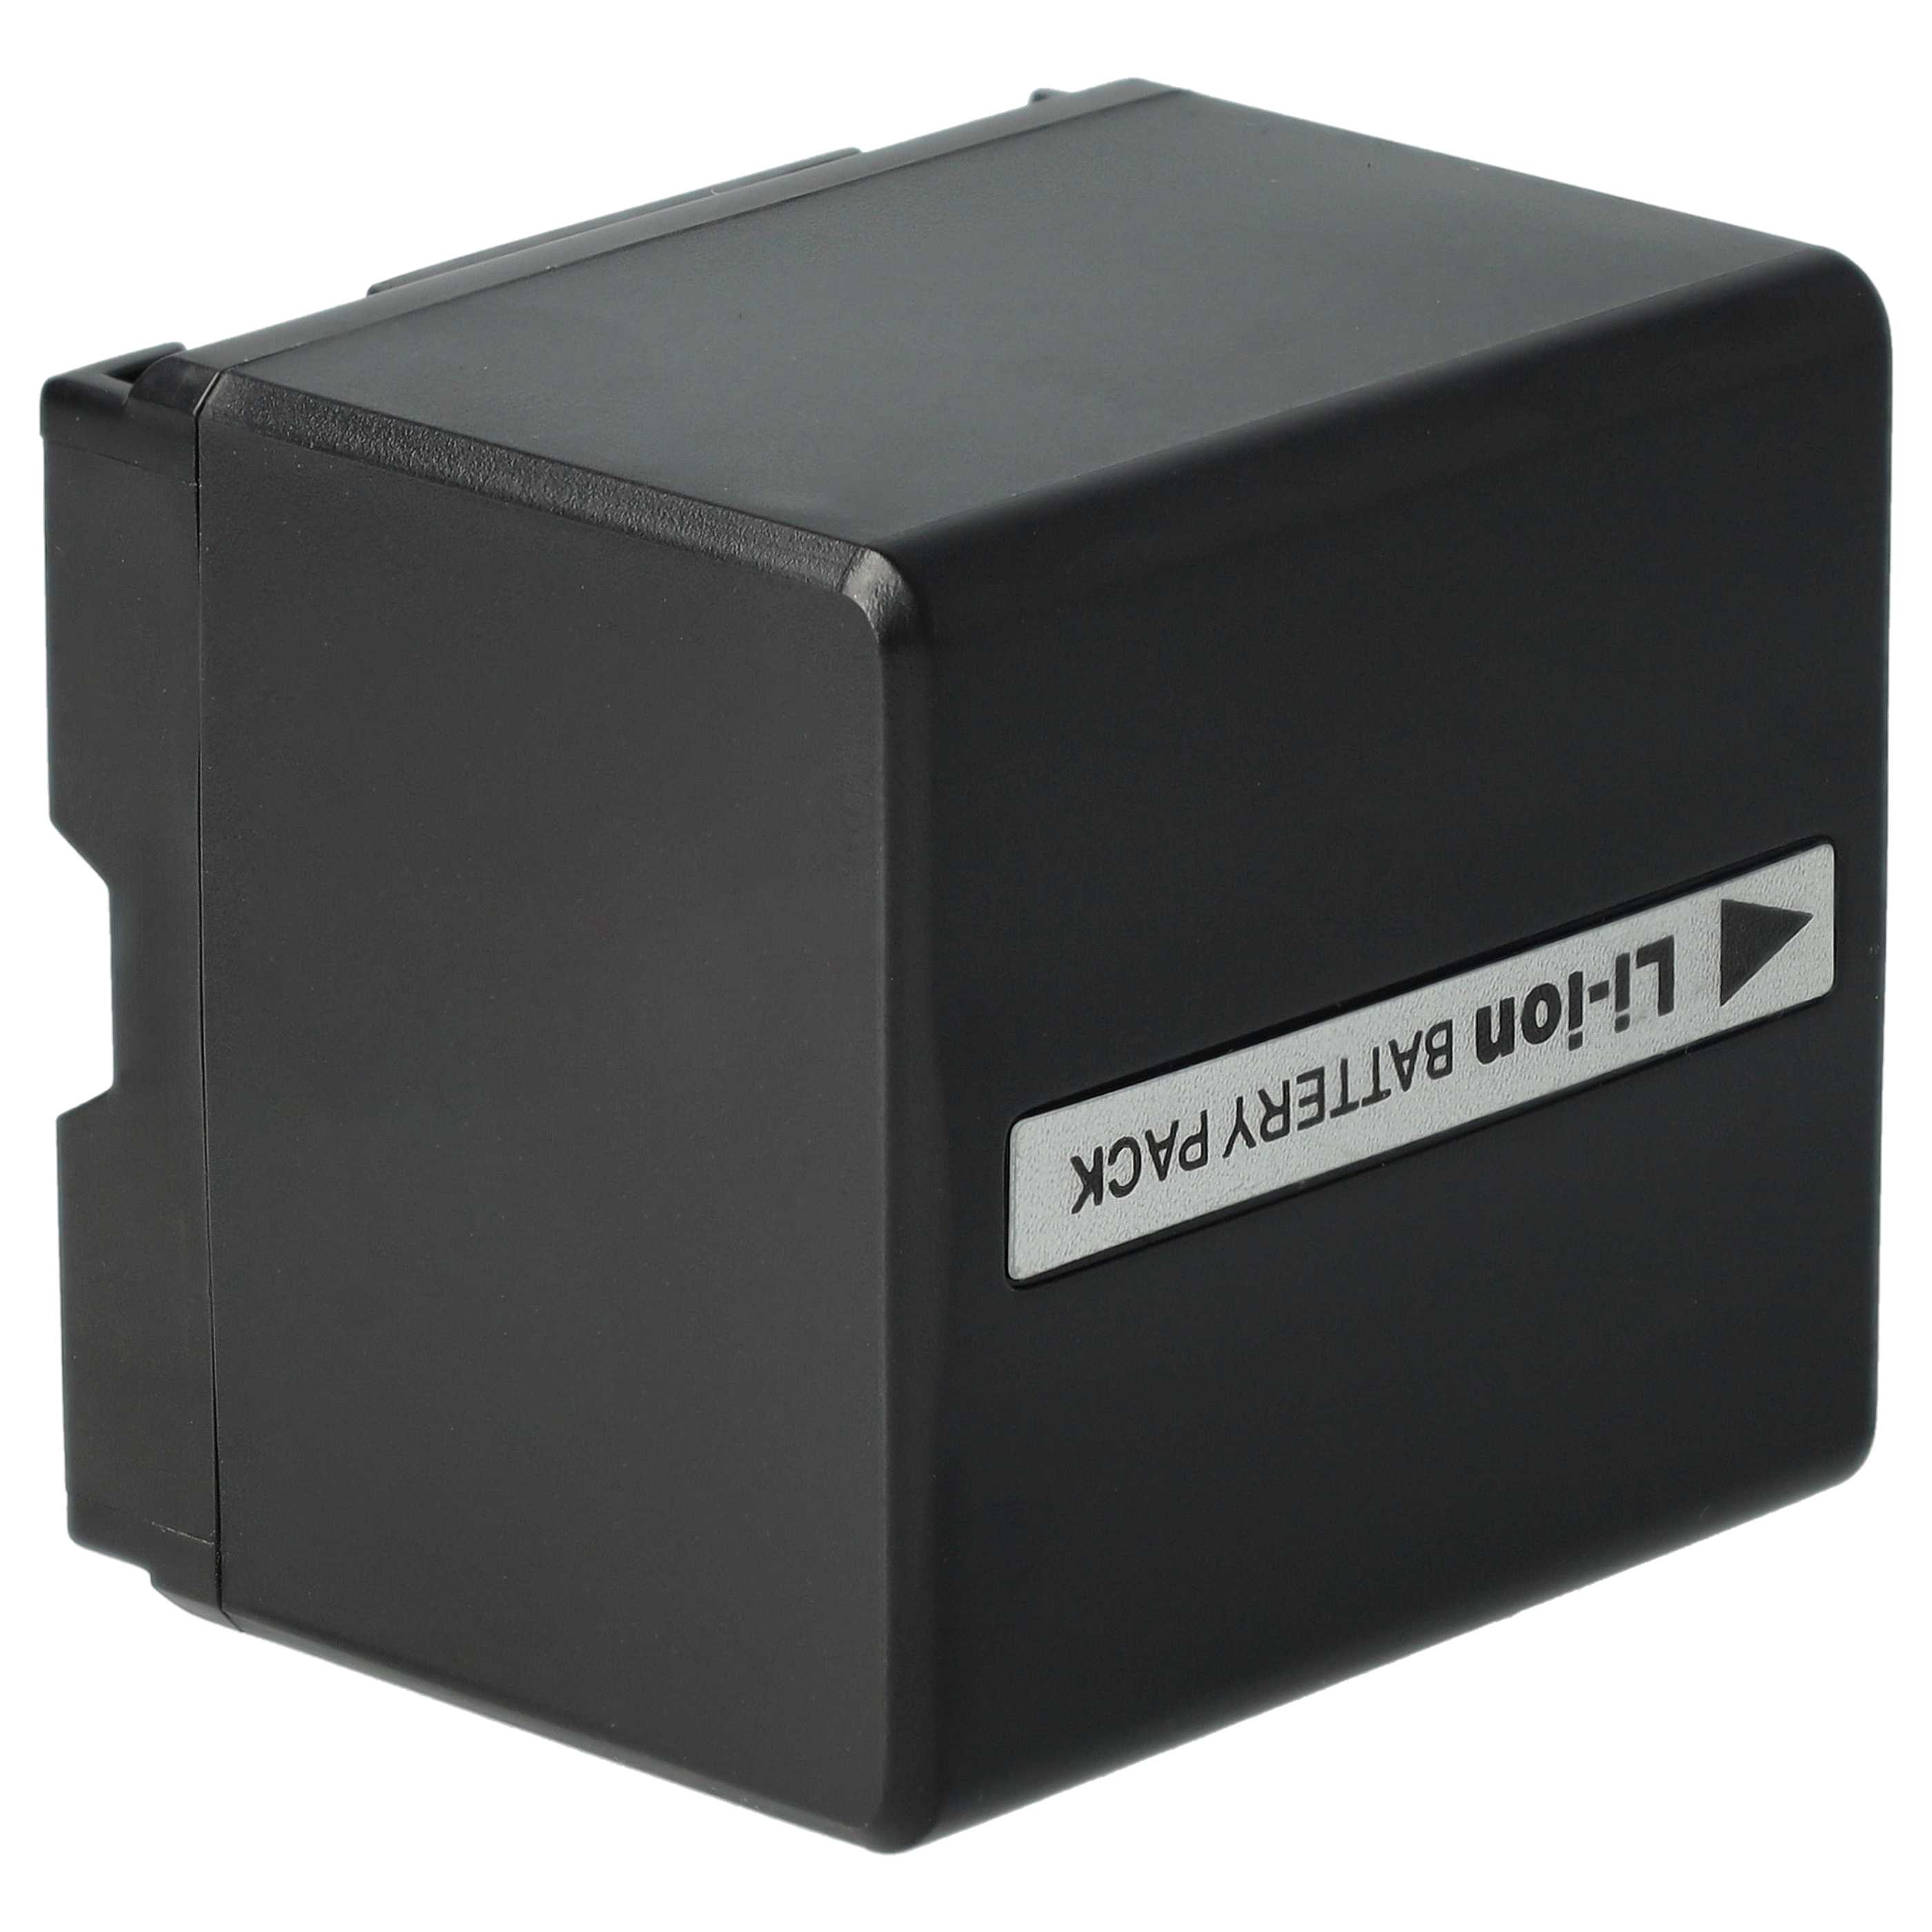 Batterie remplace Hitachi DZ-BP14s, DZ-BP07s, DZ-BP21s pour appareil photo - 1100mAh 7,2V Li-ion